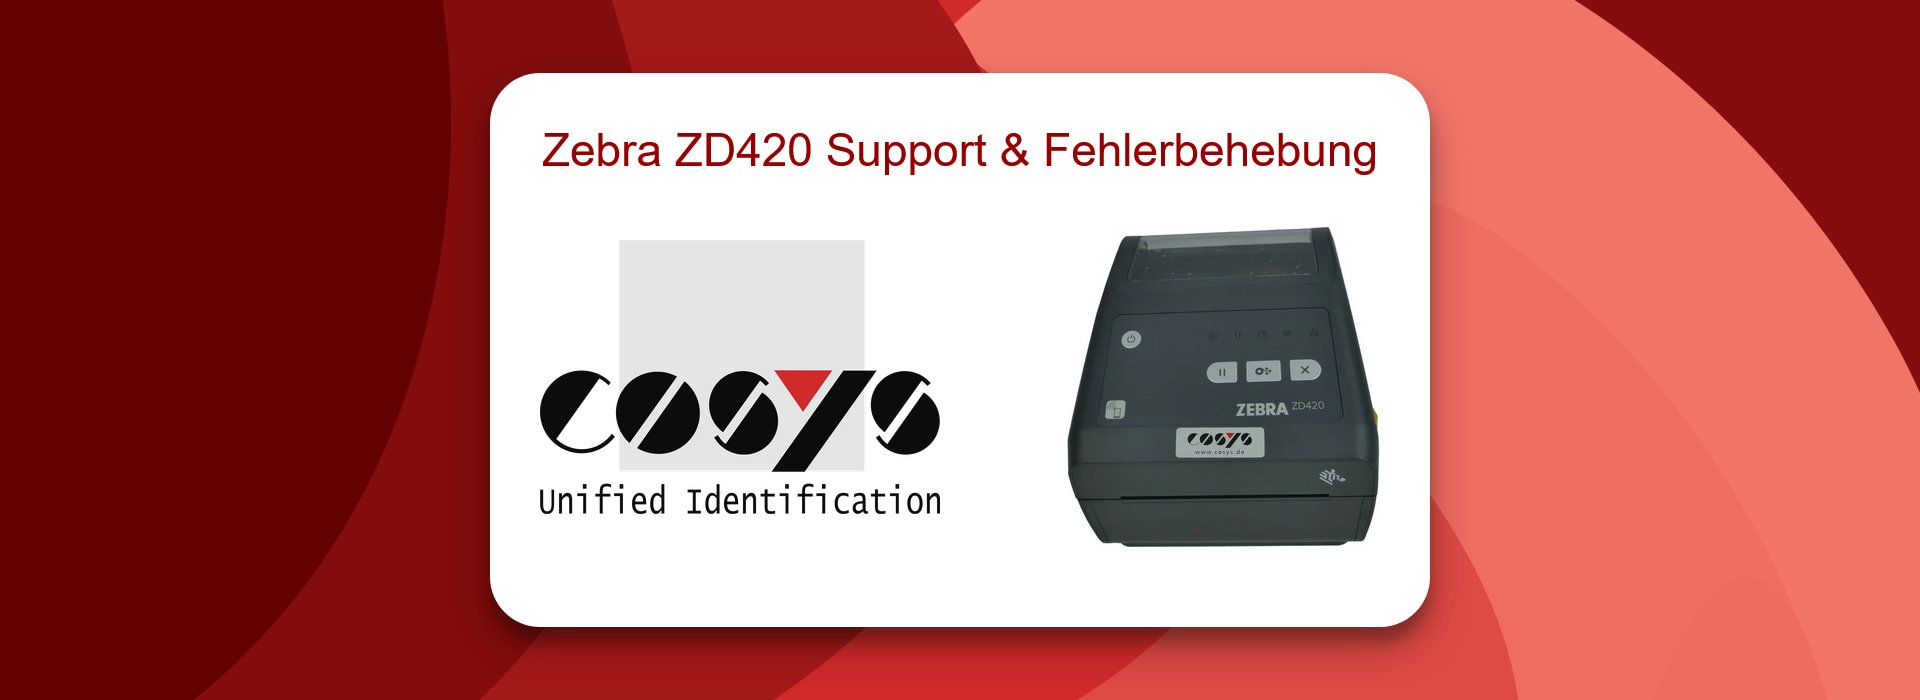 Zebra ZD420 Support und Fehlerbehebung